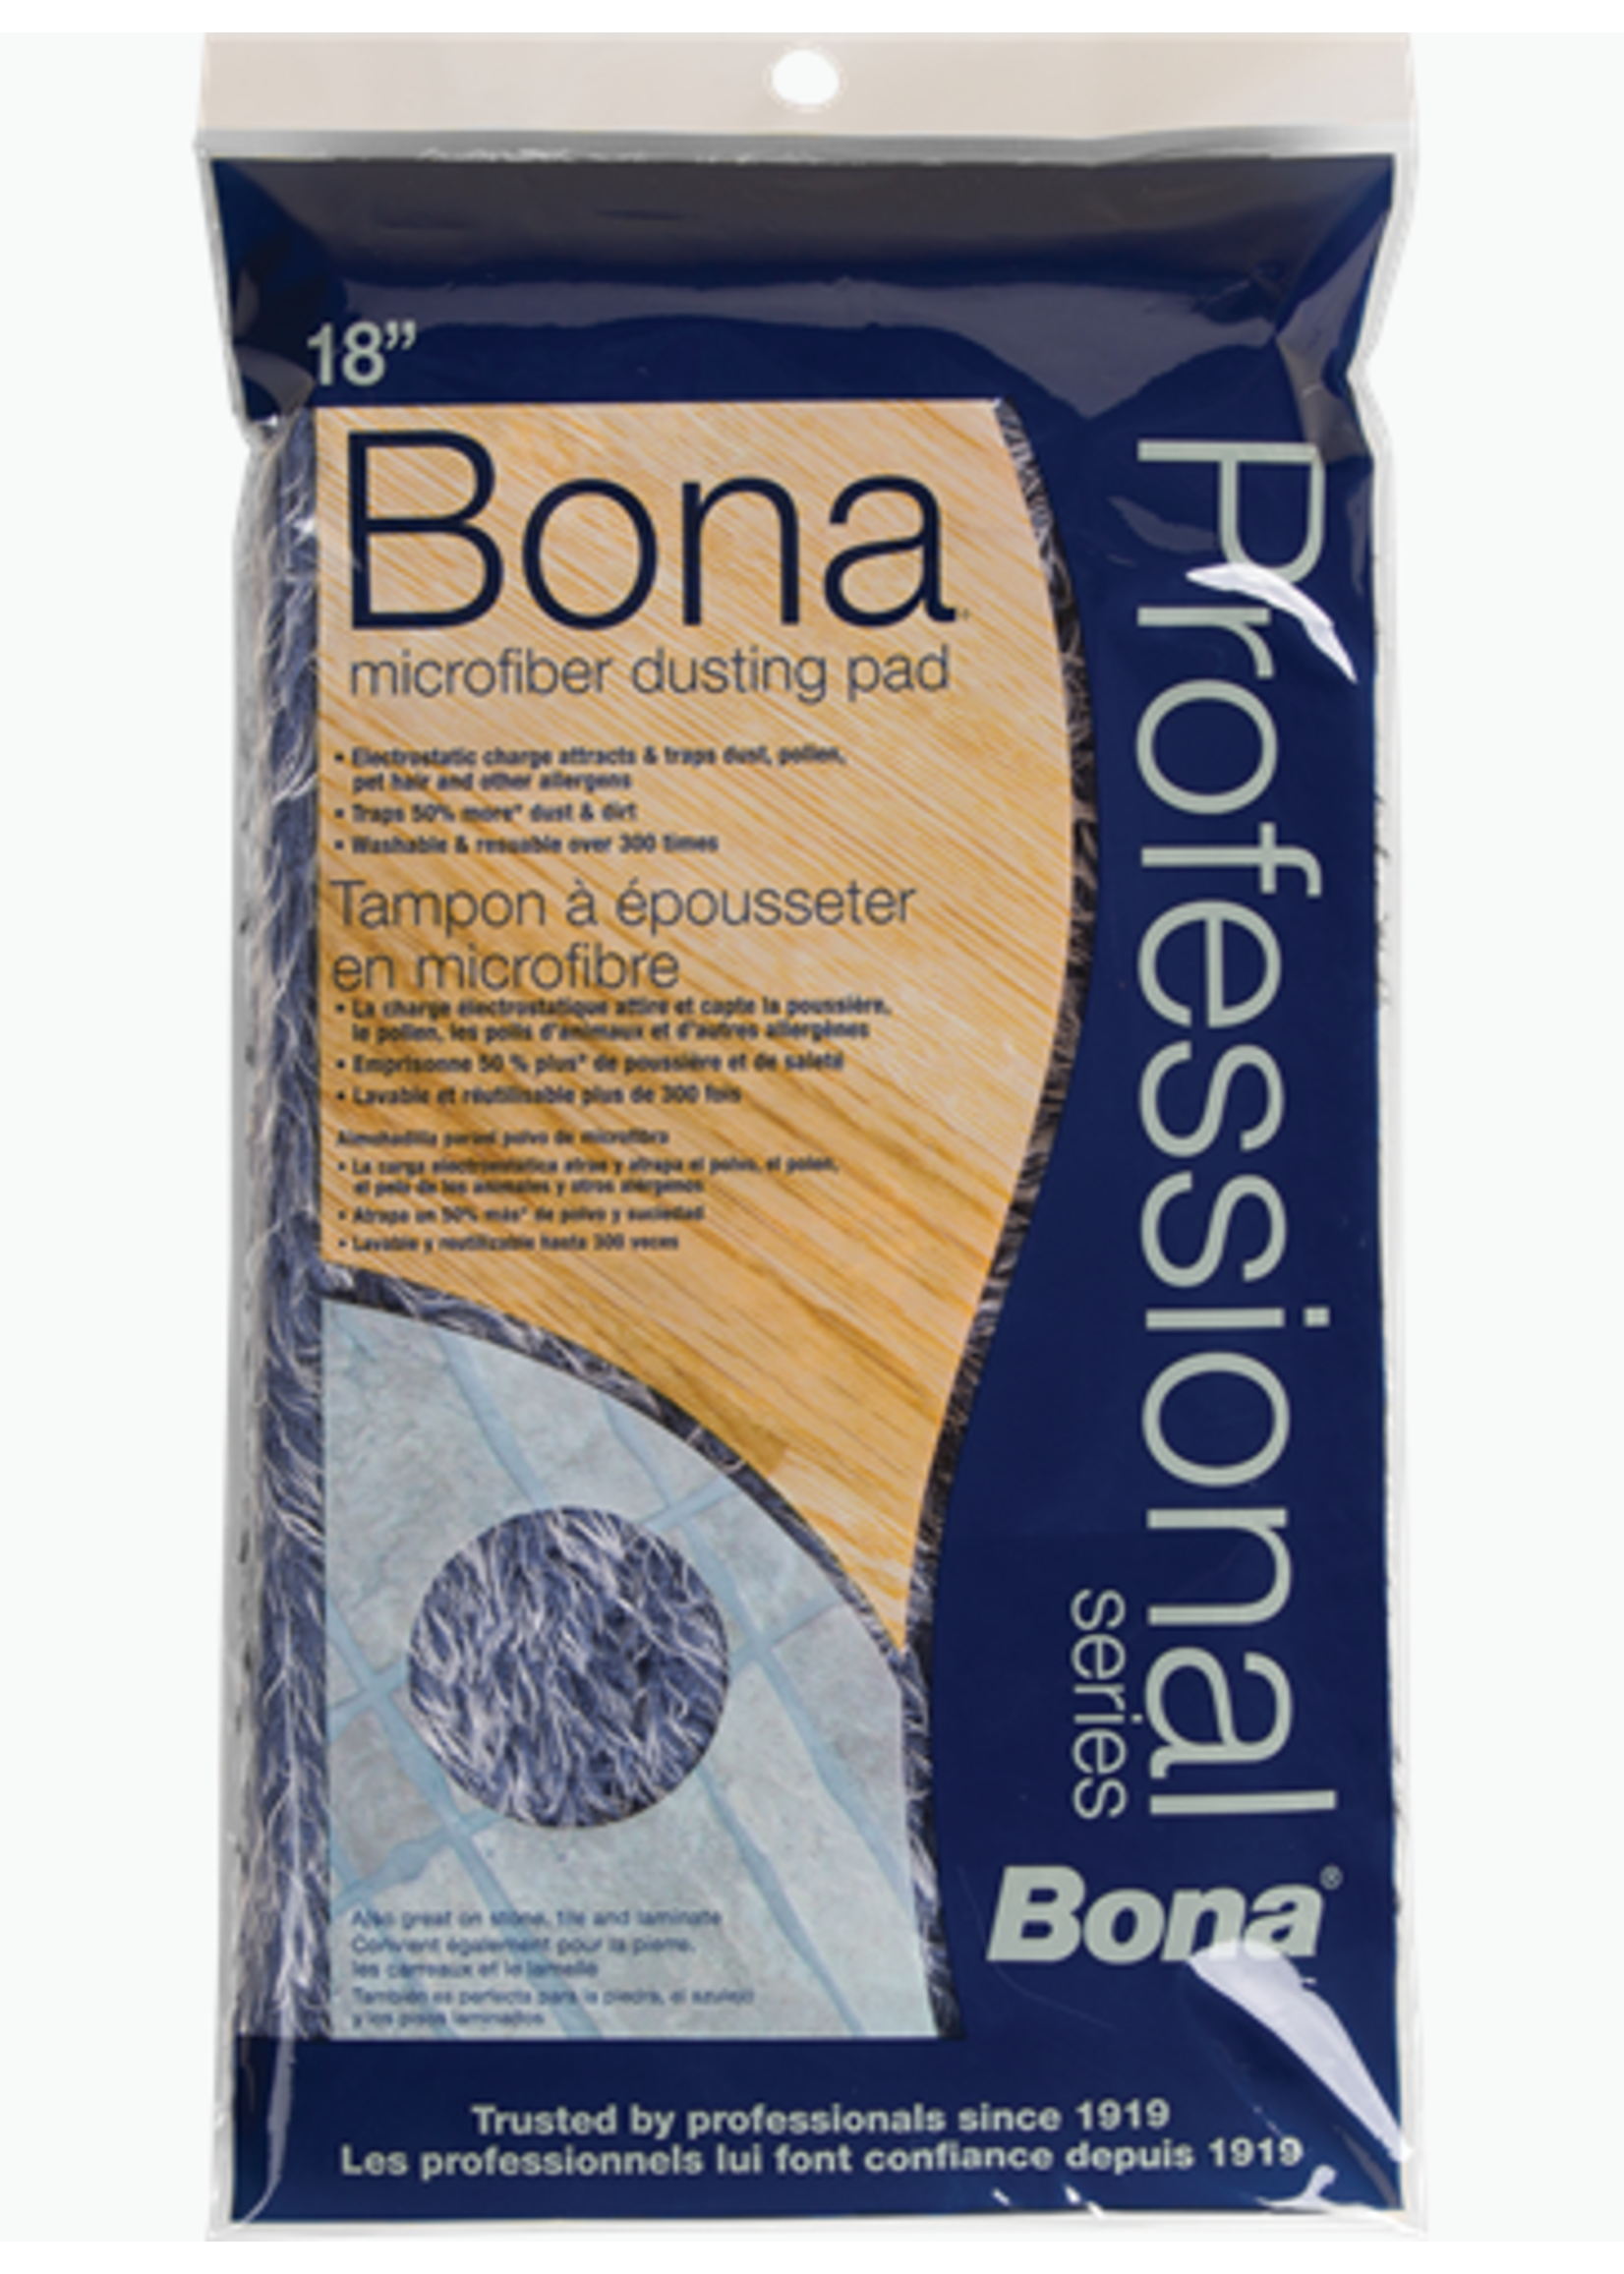 Bona Bona 18 in microfiber dusting pad